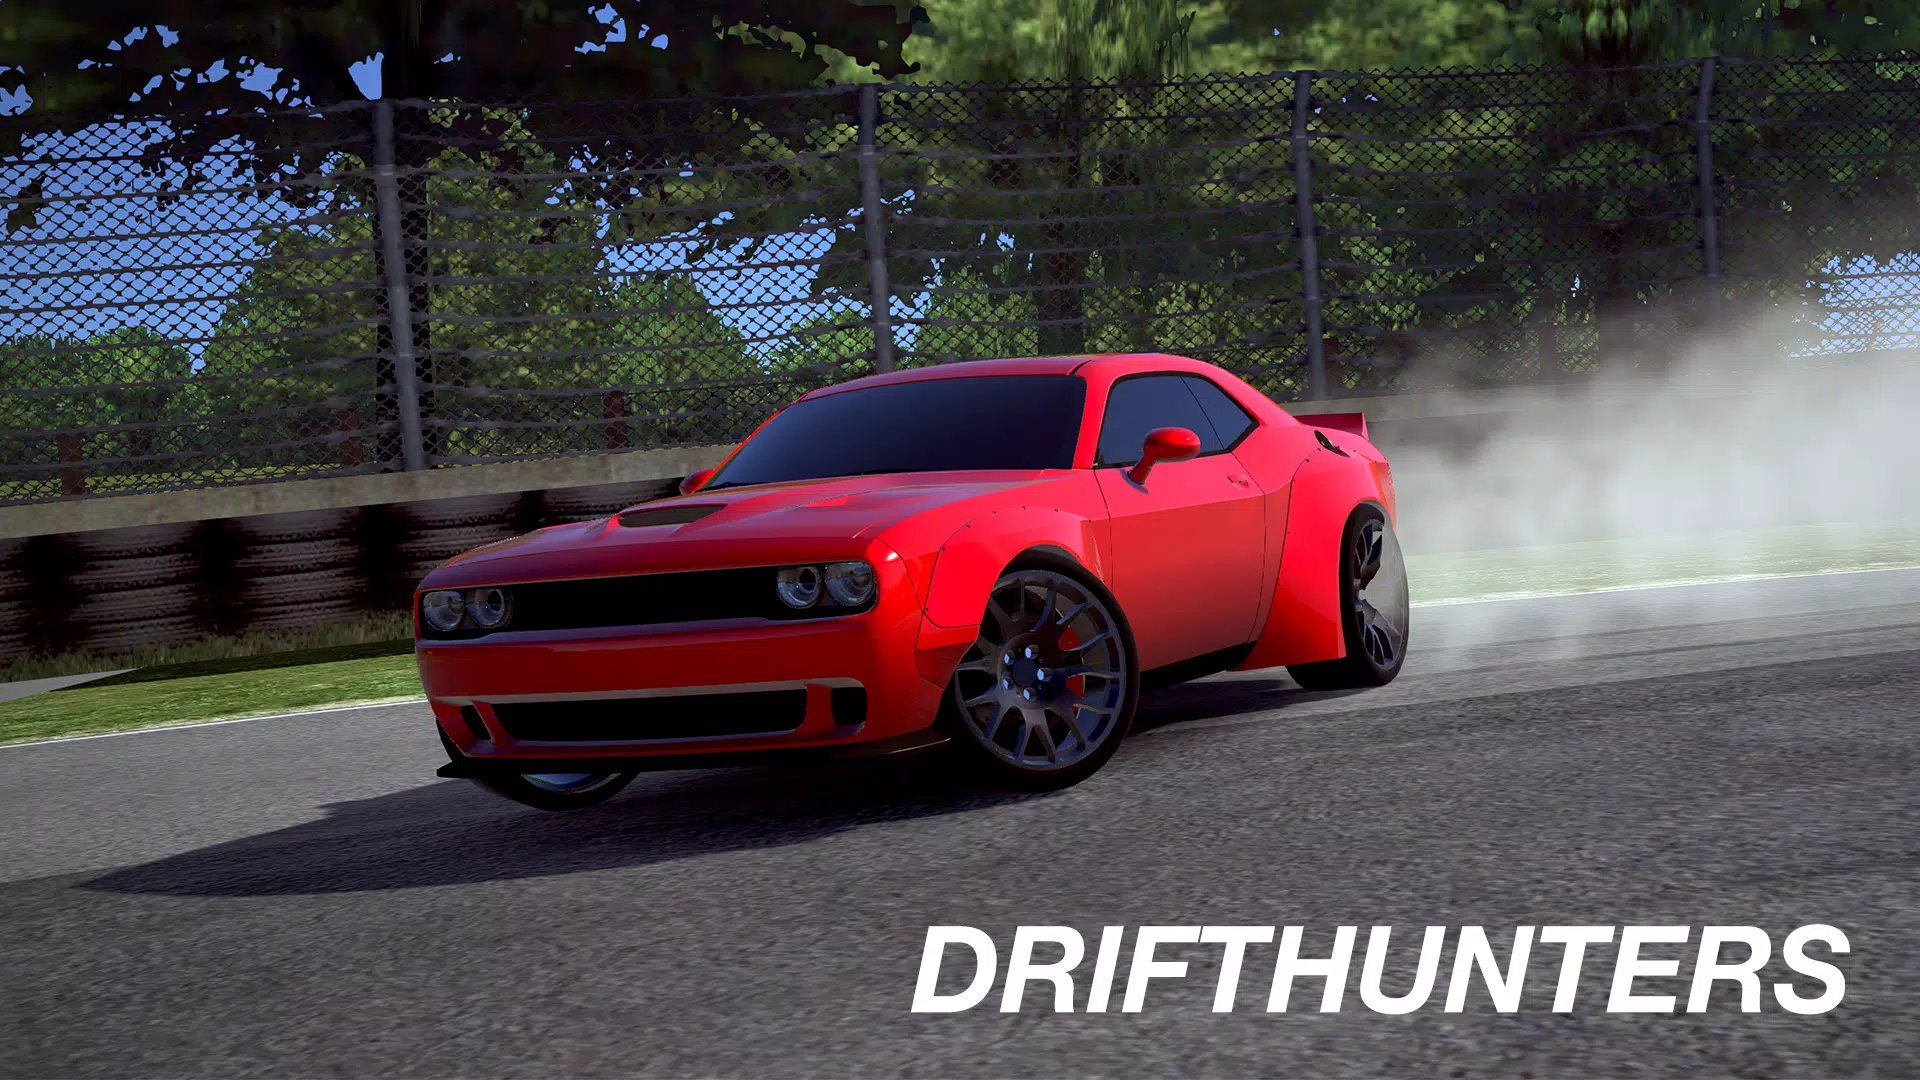 Drift Hunters - Drifted Games